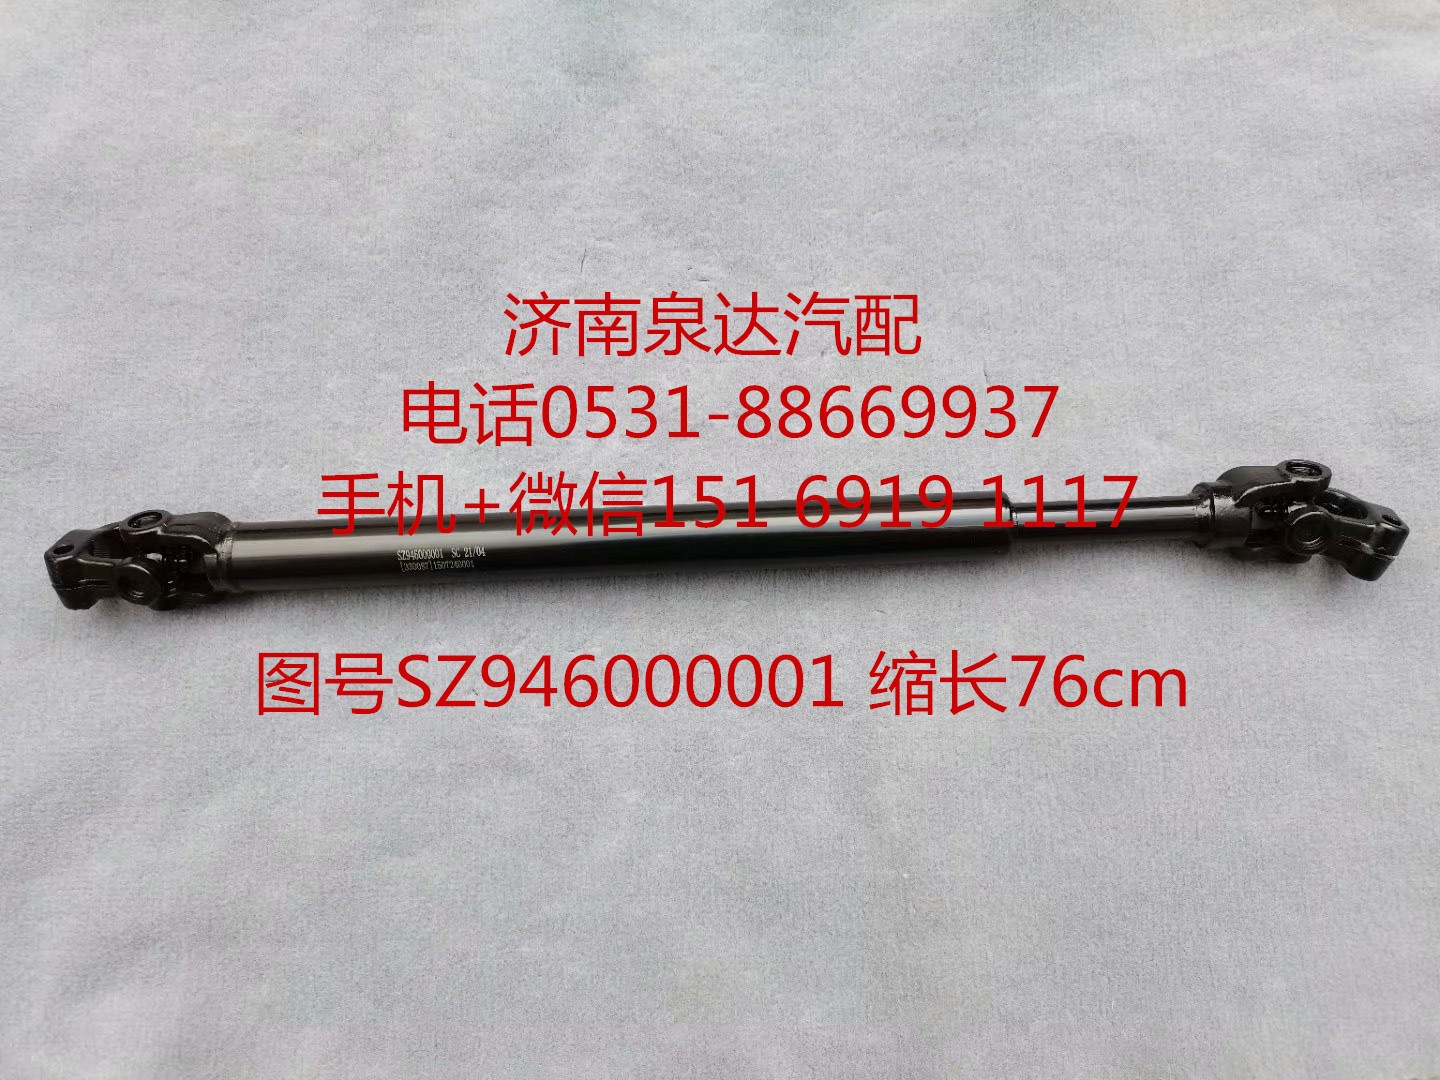 SZ946000001,伸缩轴,济南泉达汽配有限公司